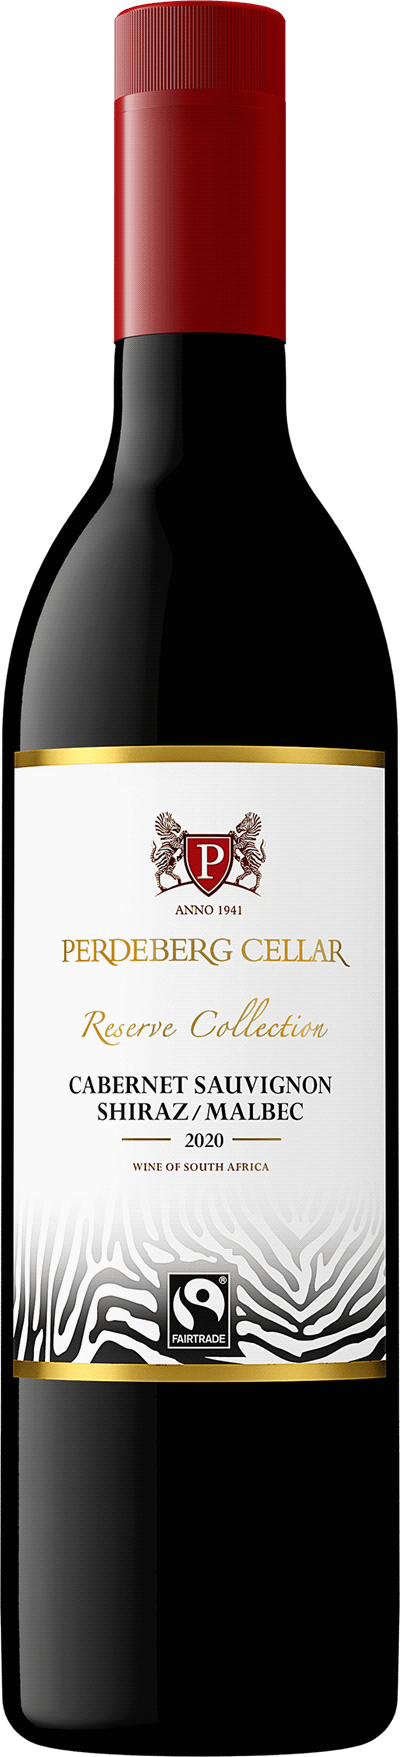 Perdeberg Cellar Reserve Collection Cabernet Sauvignon Shiraz Malbec, 2021